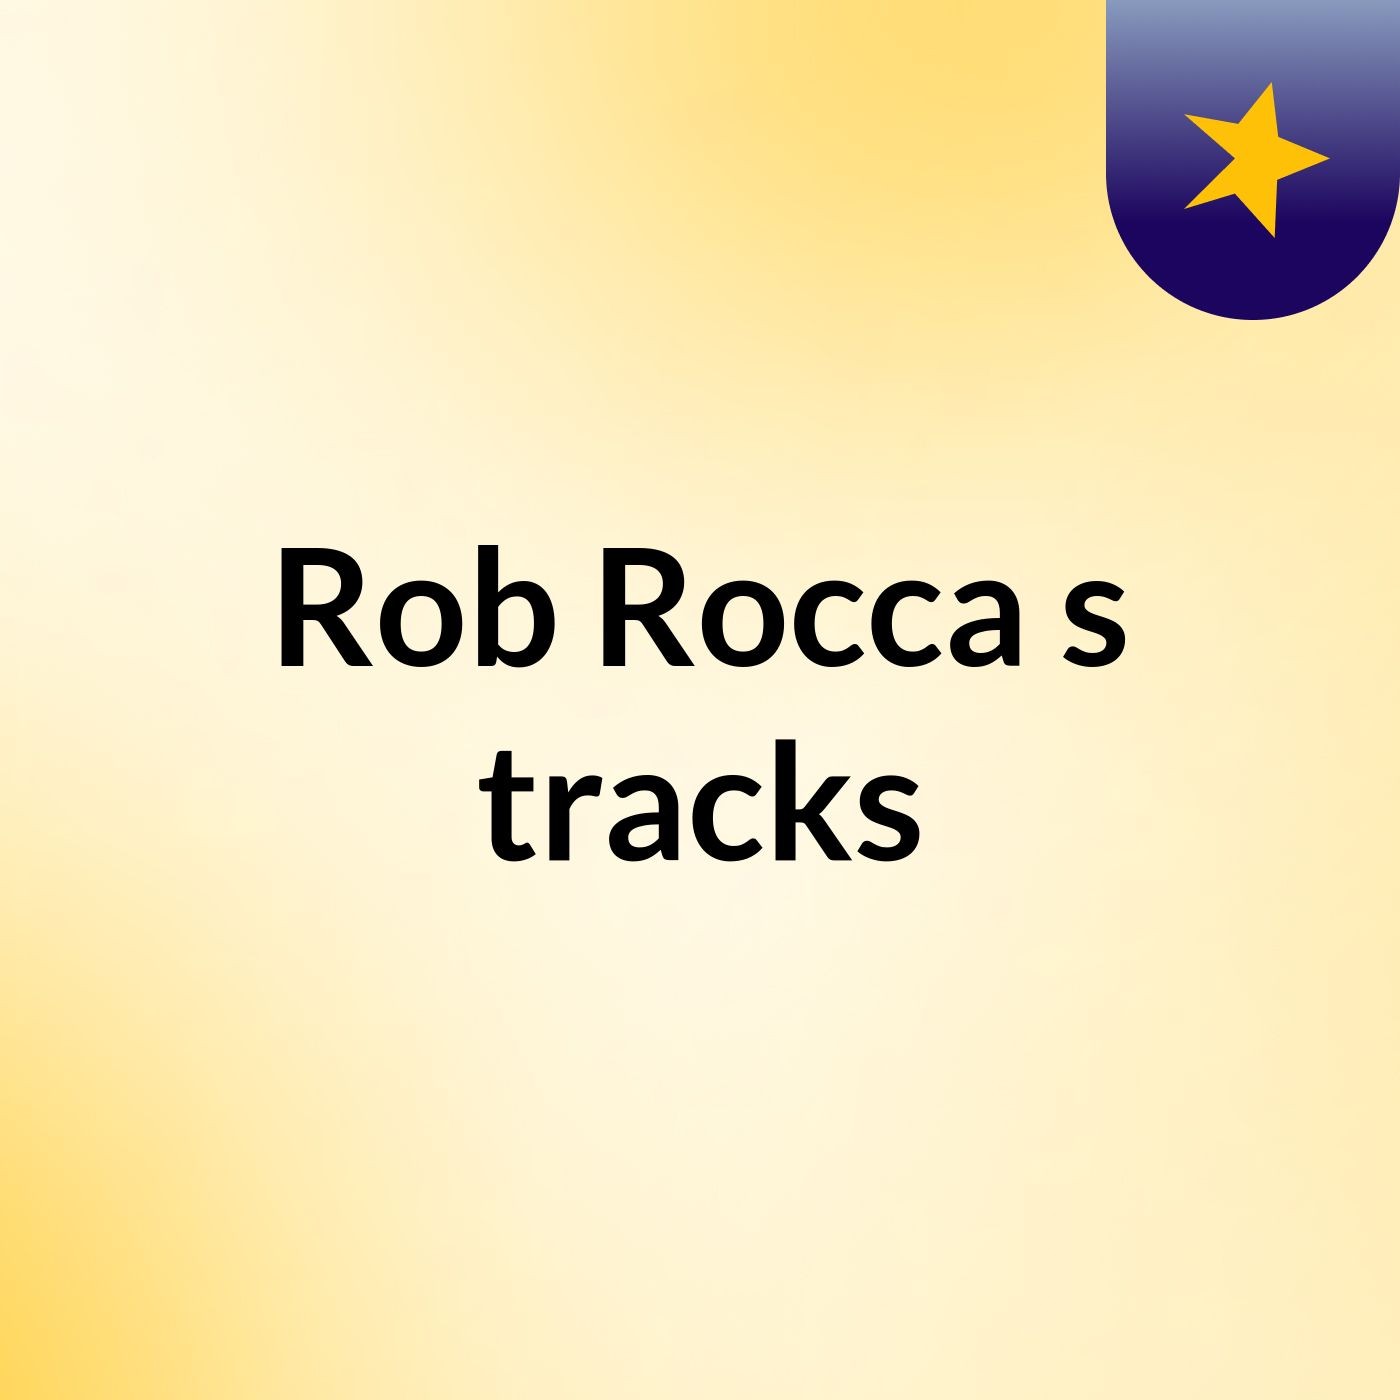 Rob Rocca's tracks